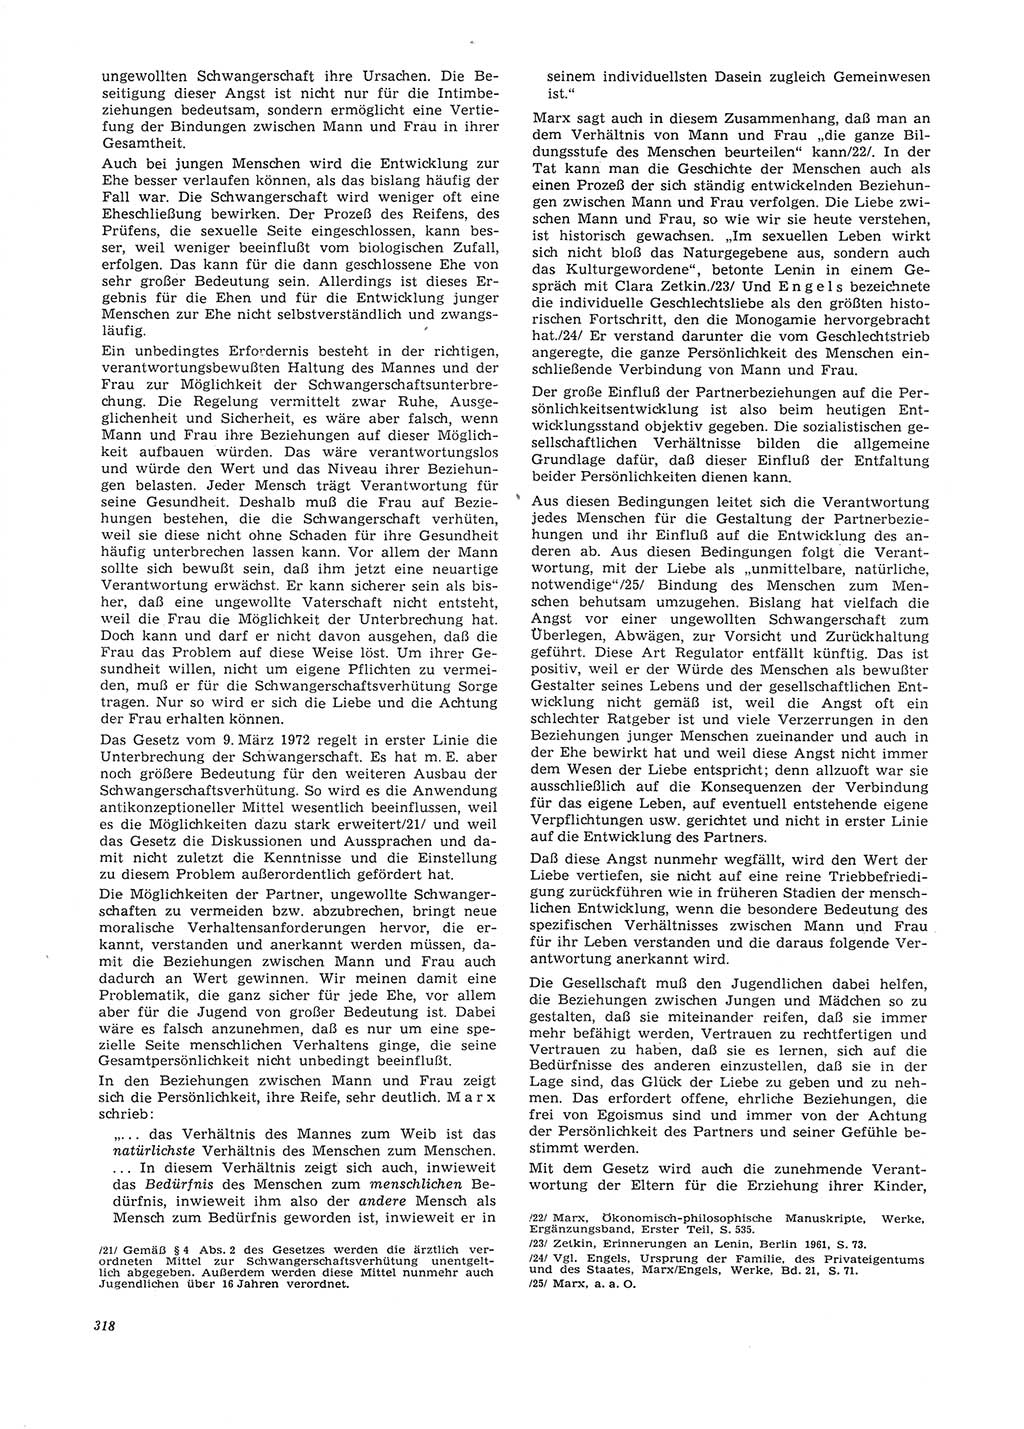 Neue Justiz (NJ), Zeitschrift für Recht und Rechtswissenschaft [Deutsche Demokratische Republik (DDR)], 26. Jahrgang 1972, Seite 318 (NJ DDR 1972, S. 318)